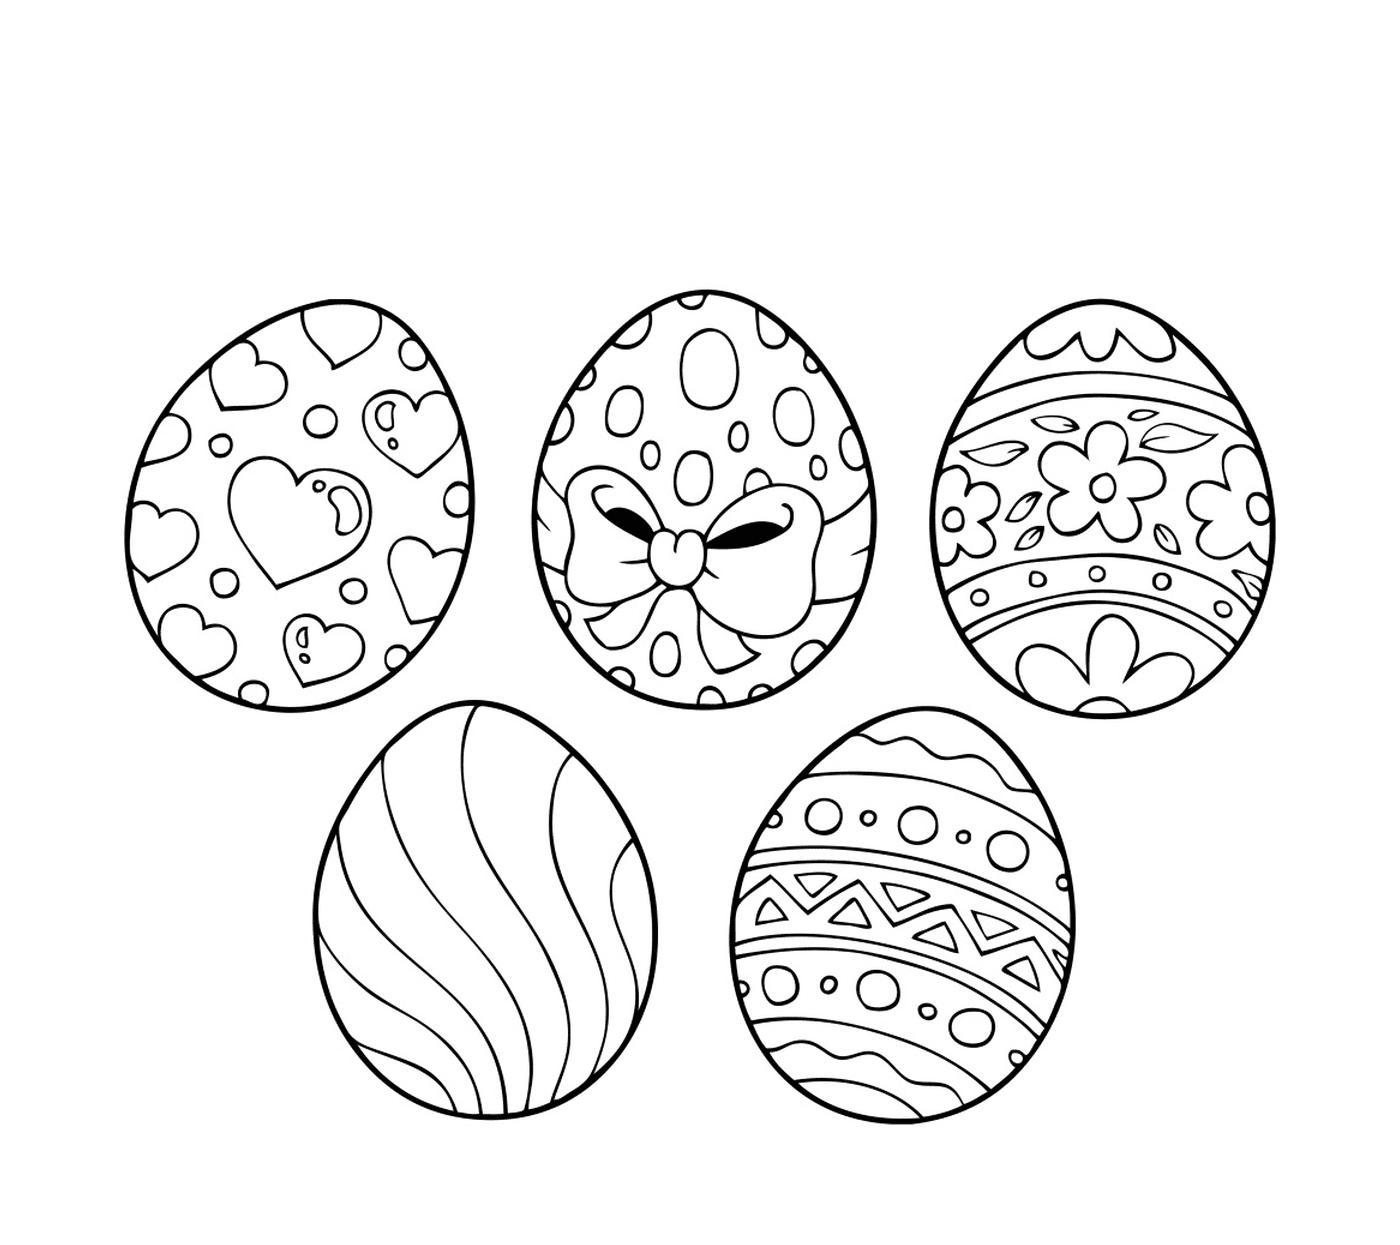  Пасхальные яйца 2017 года, набор пасхальных яиц, украшенных различными образцами 